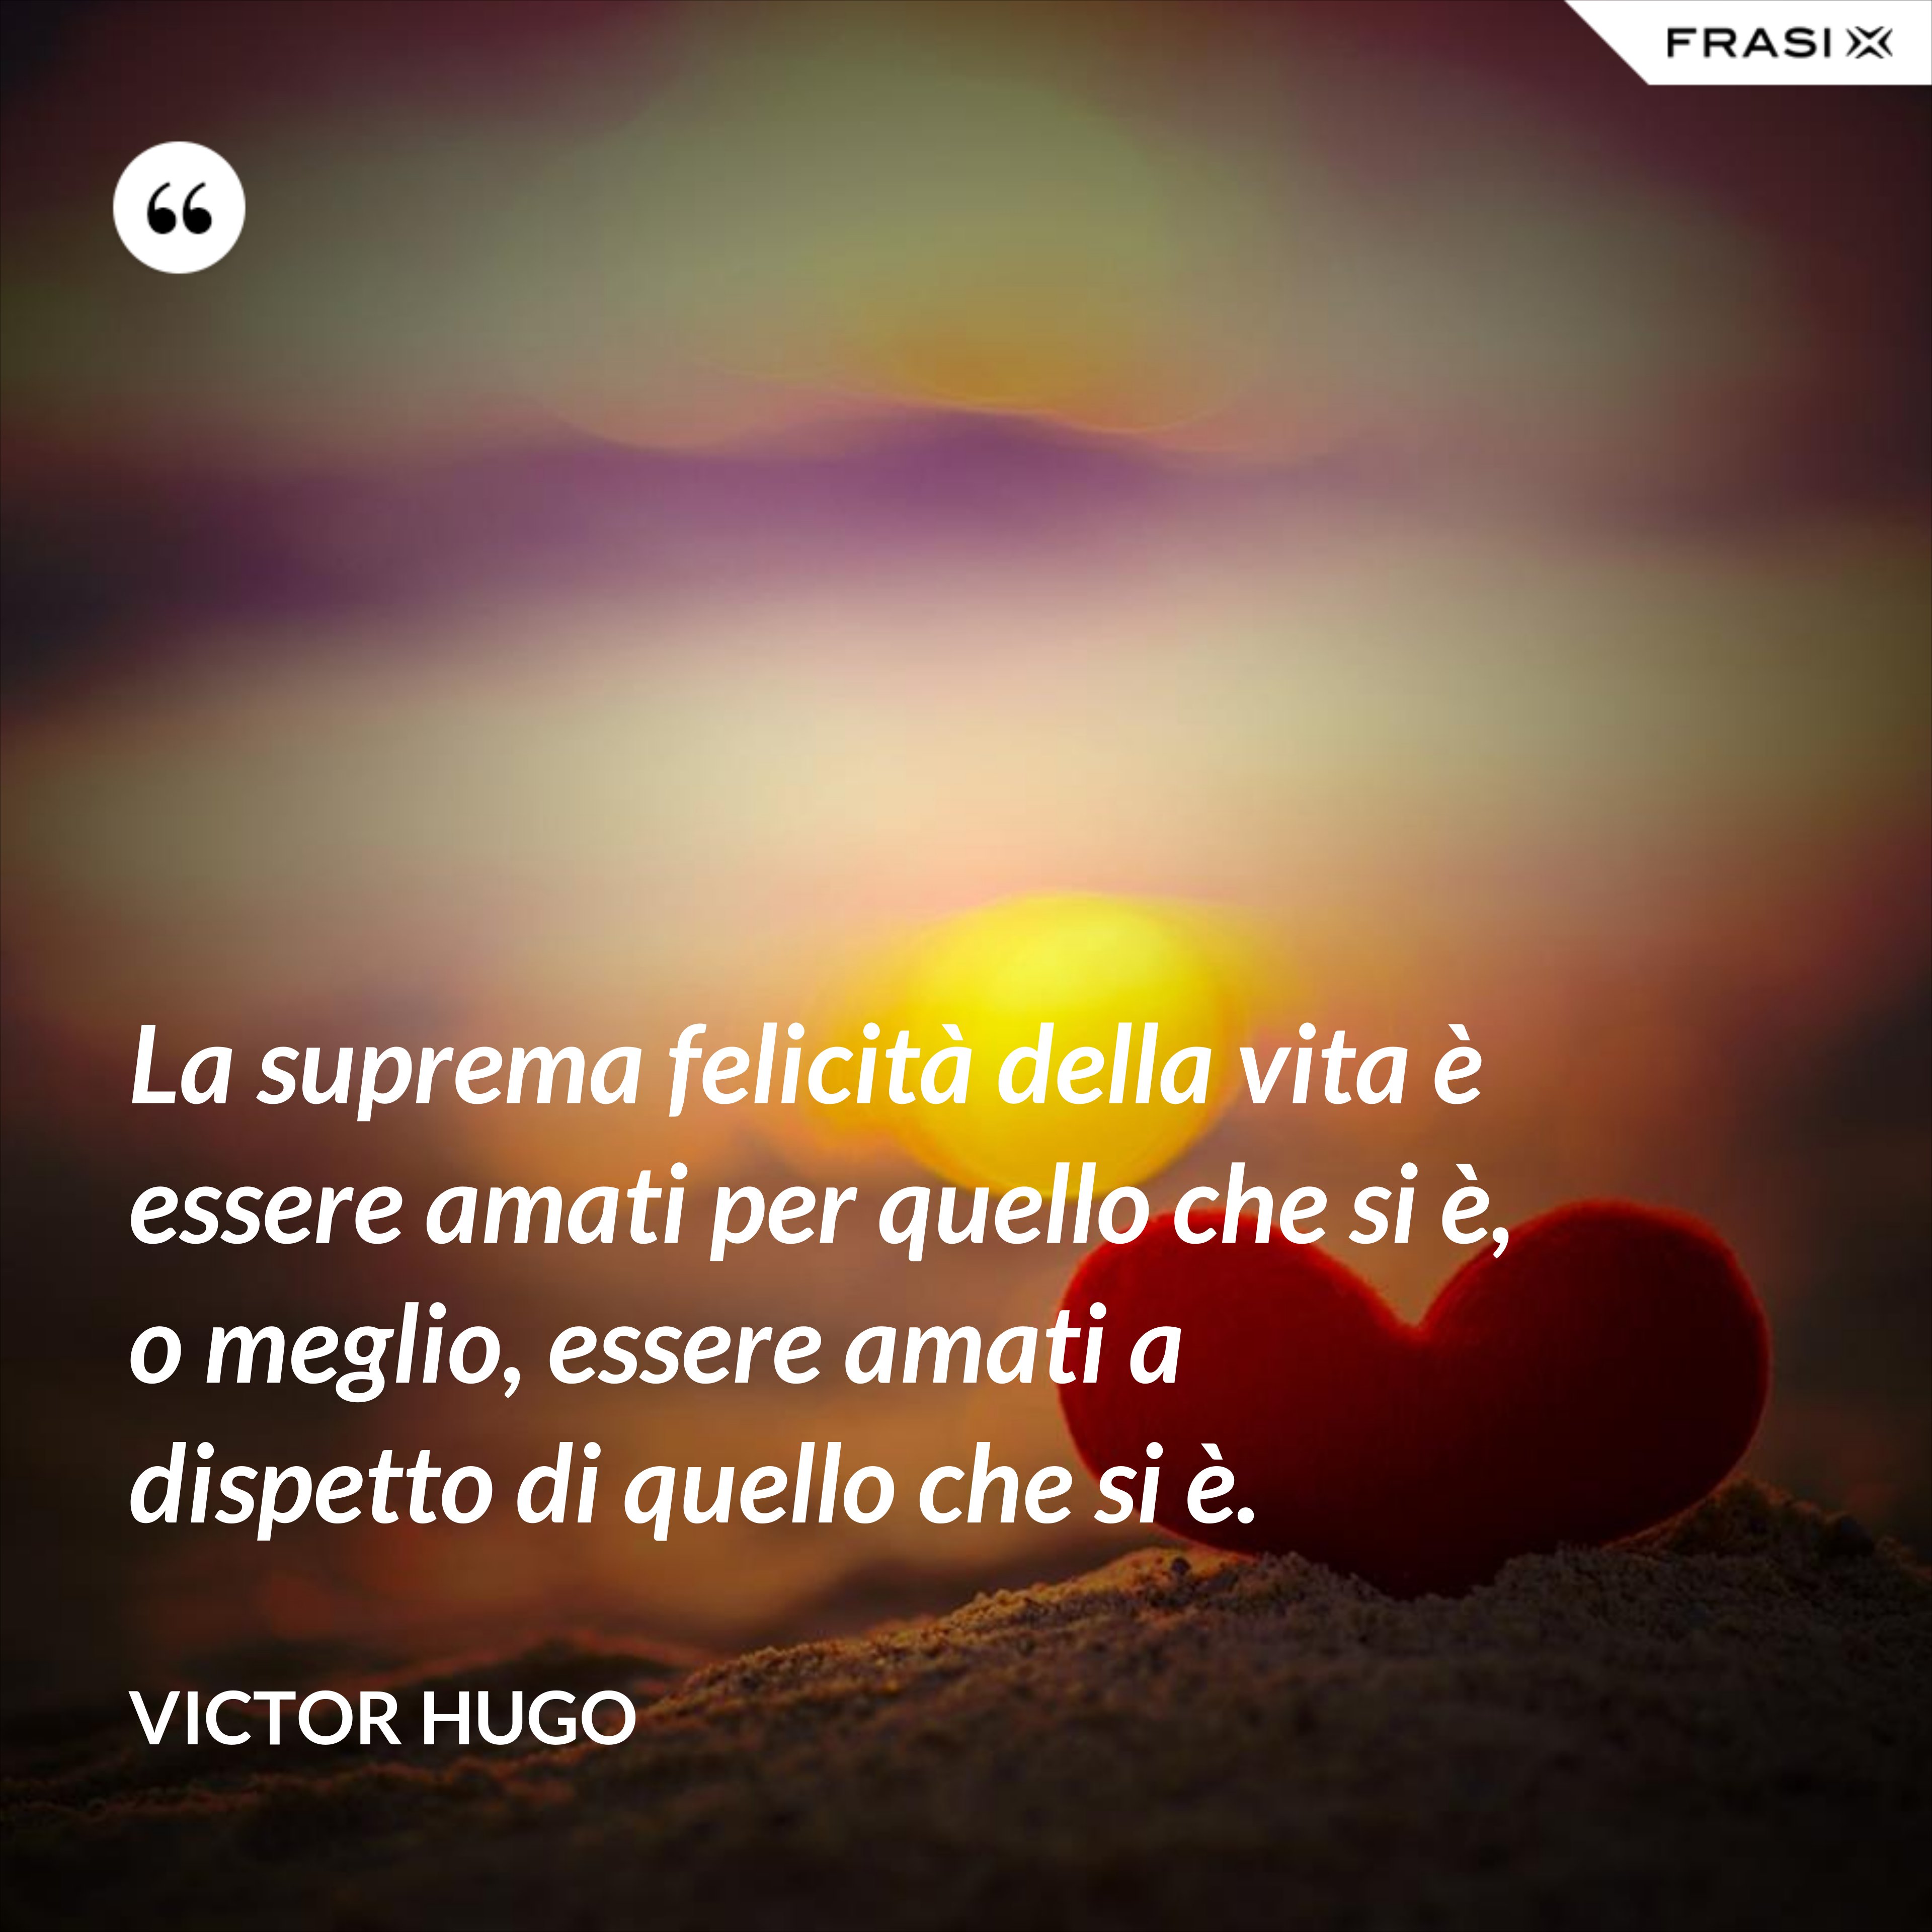 La suprema felicità della vita è essere amati per quello che si è, o meglio, essere amati a dispetto di quello che si è. - Victor Hugo